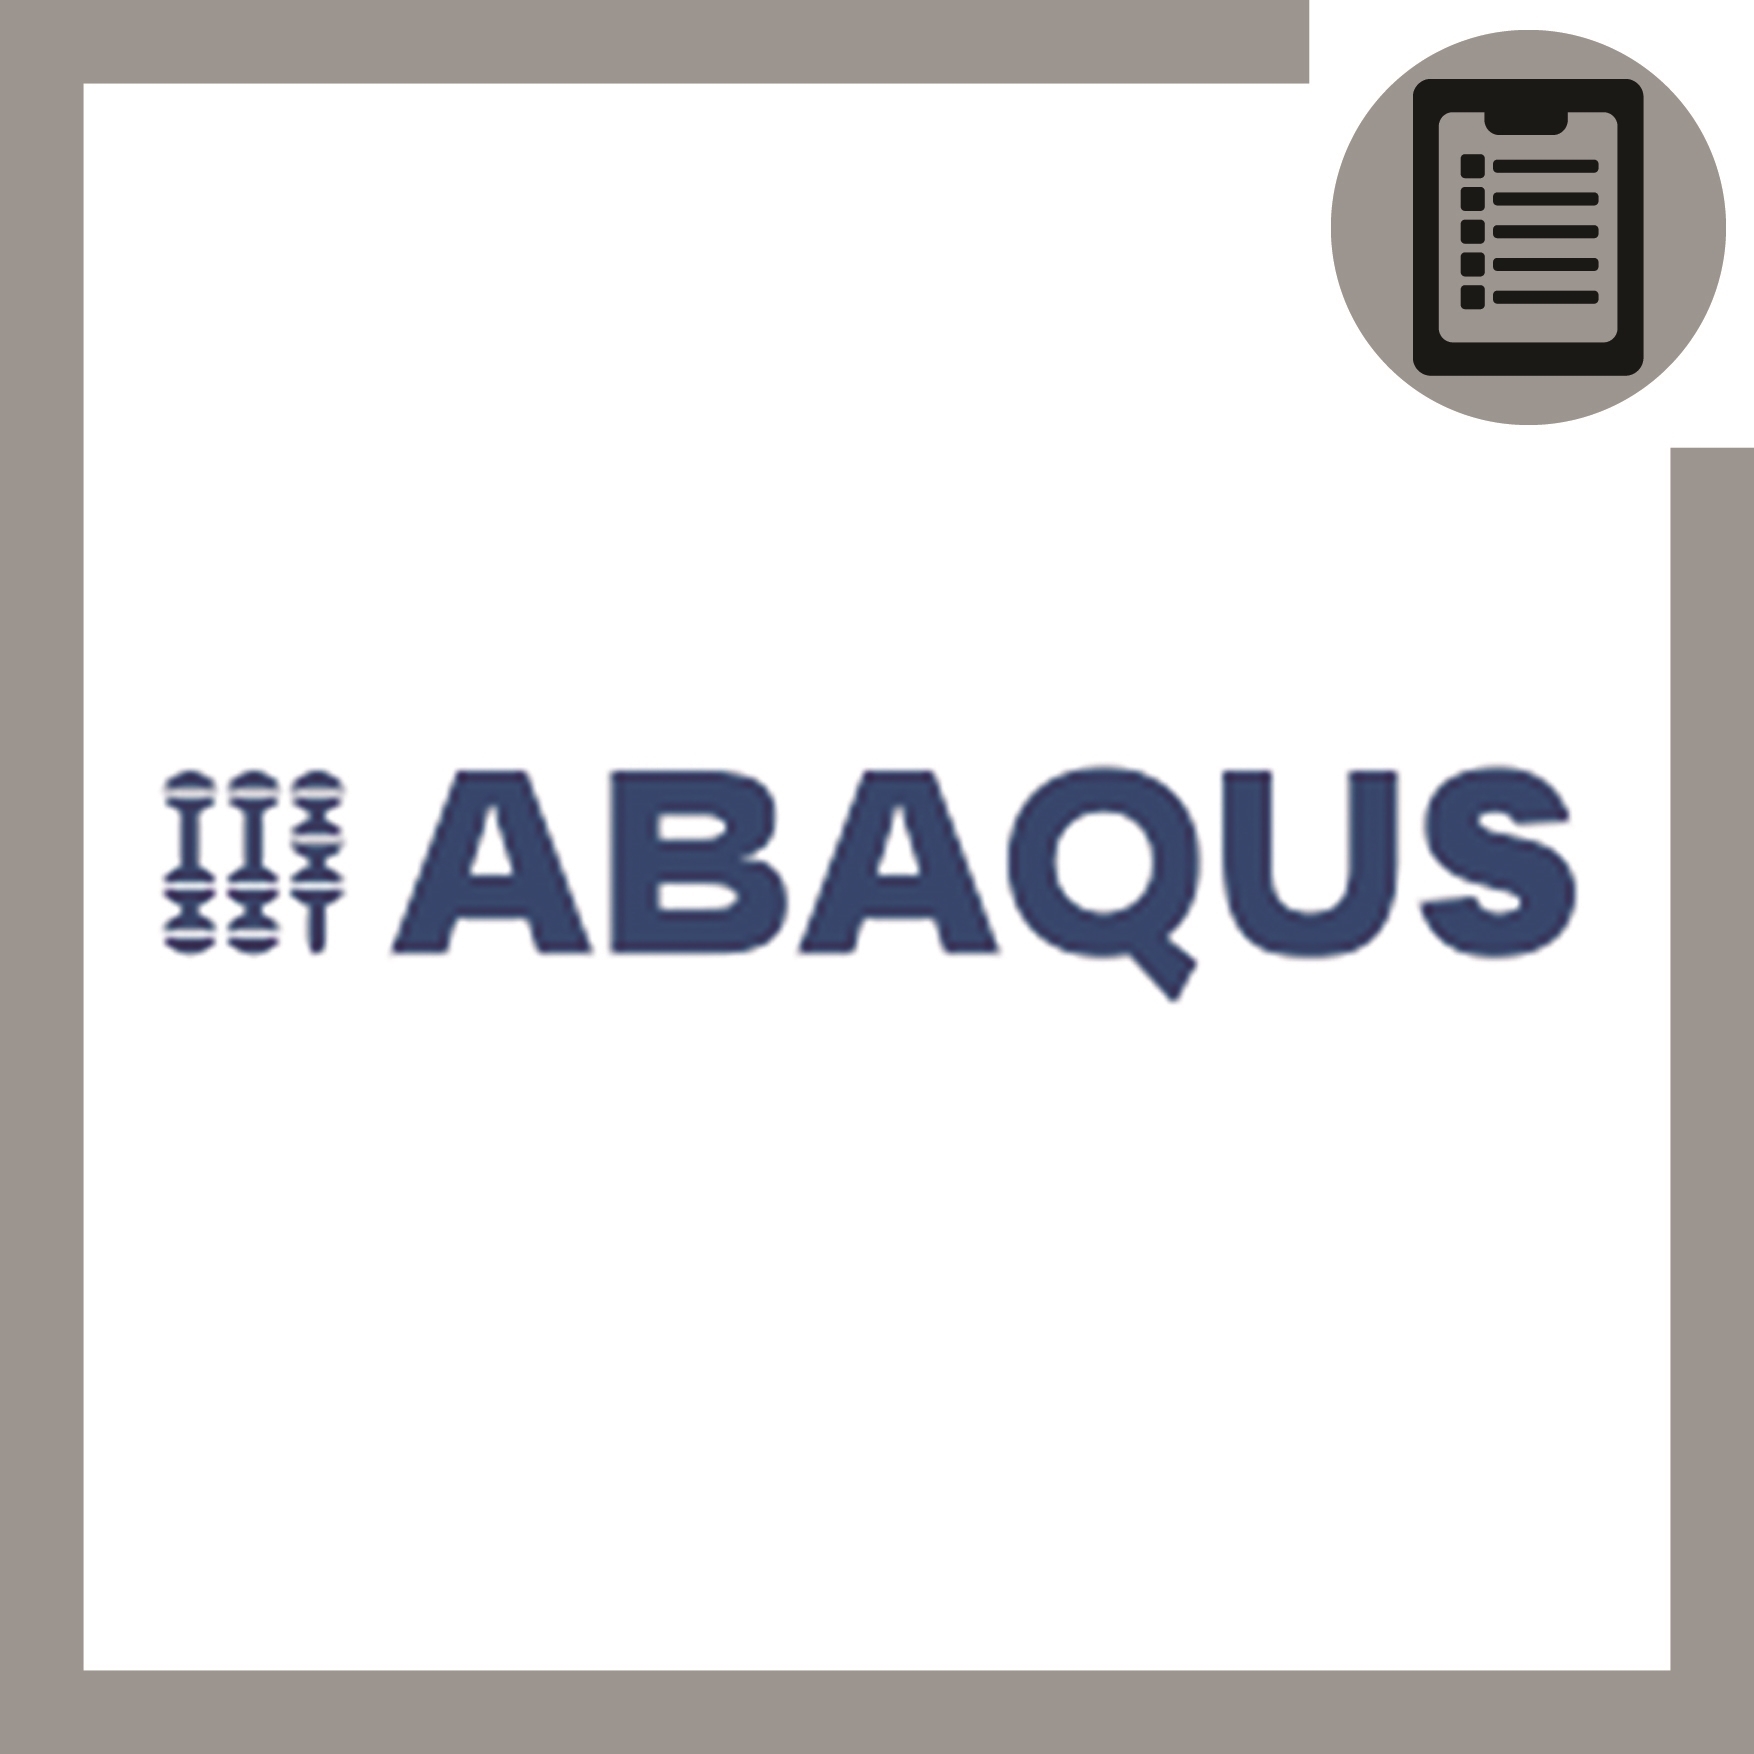 تحلیل مکانیک شکست در ABAQUS (عمران)